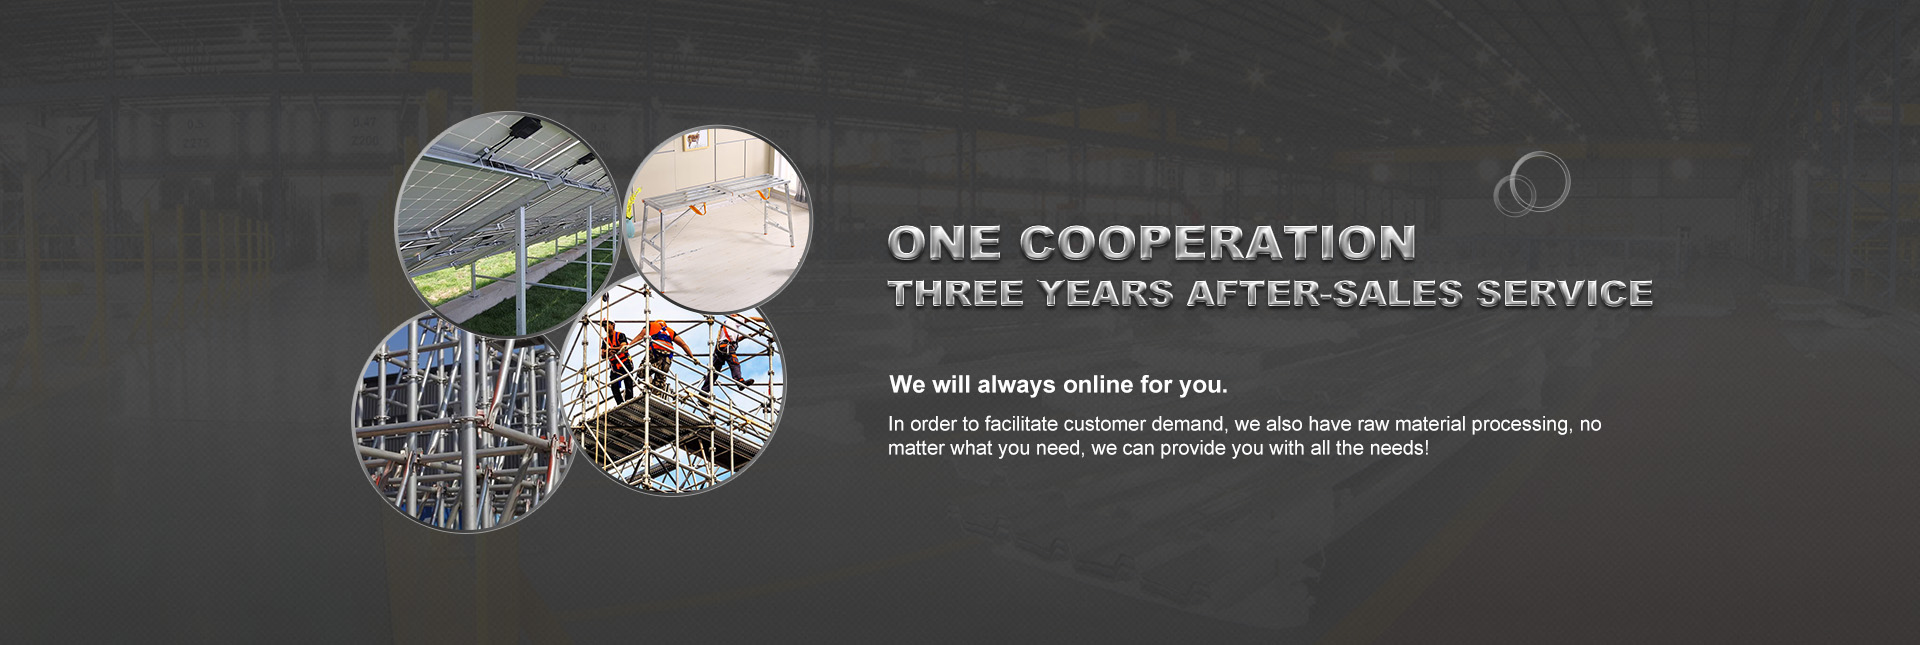 Uma cooperação, três anos de serviço pós-venda